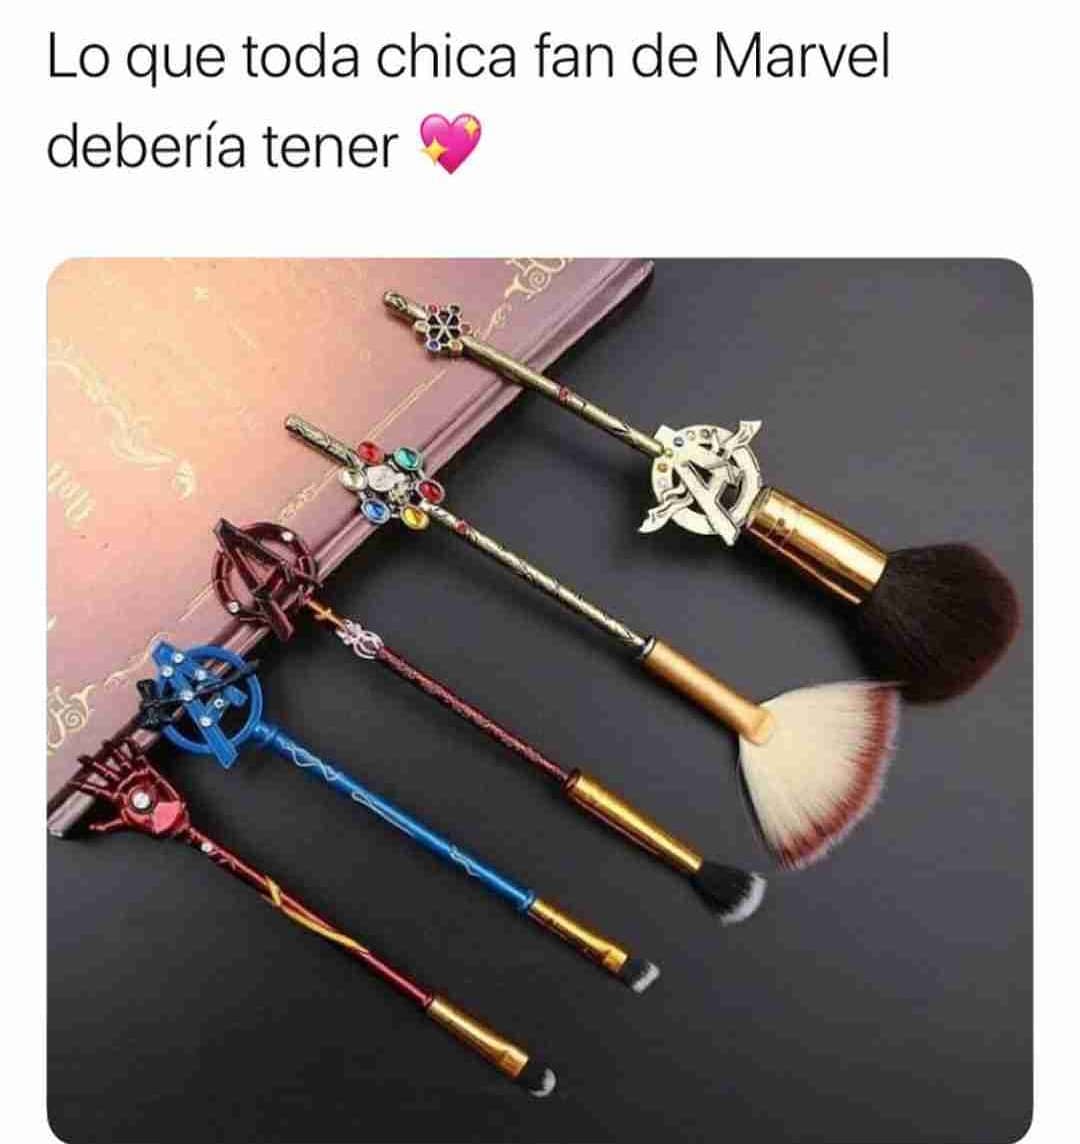 Lo que toda chica fan de Marvel debería tener.